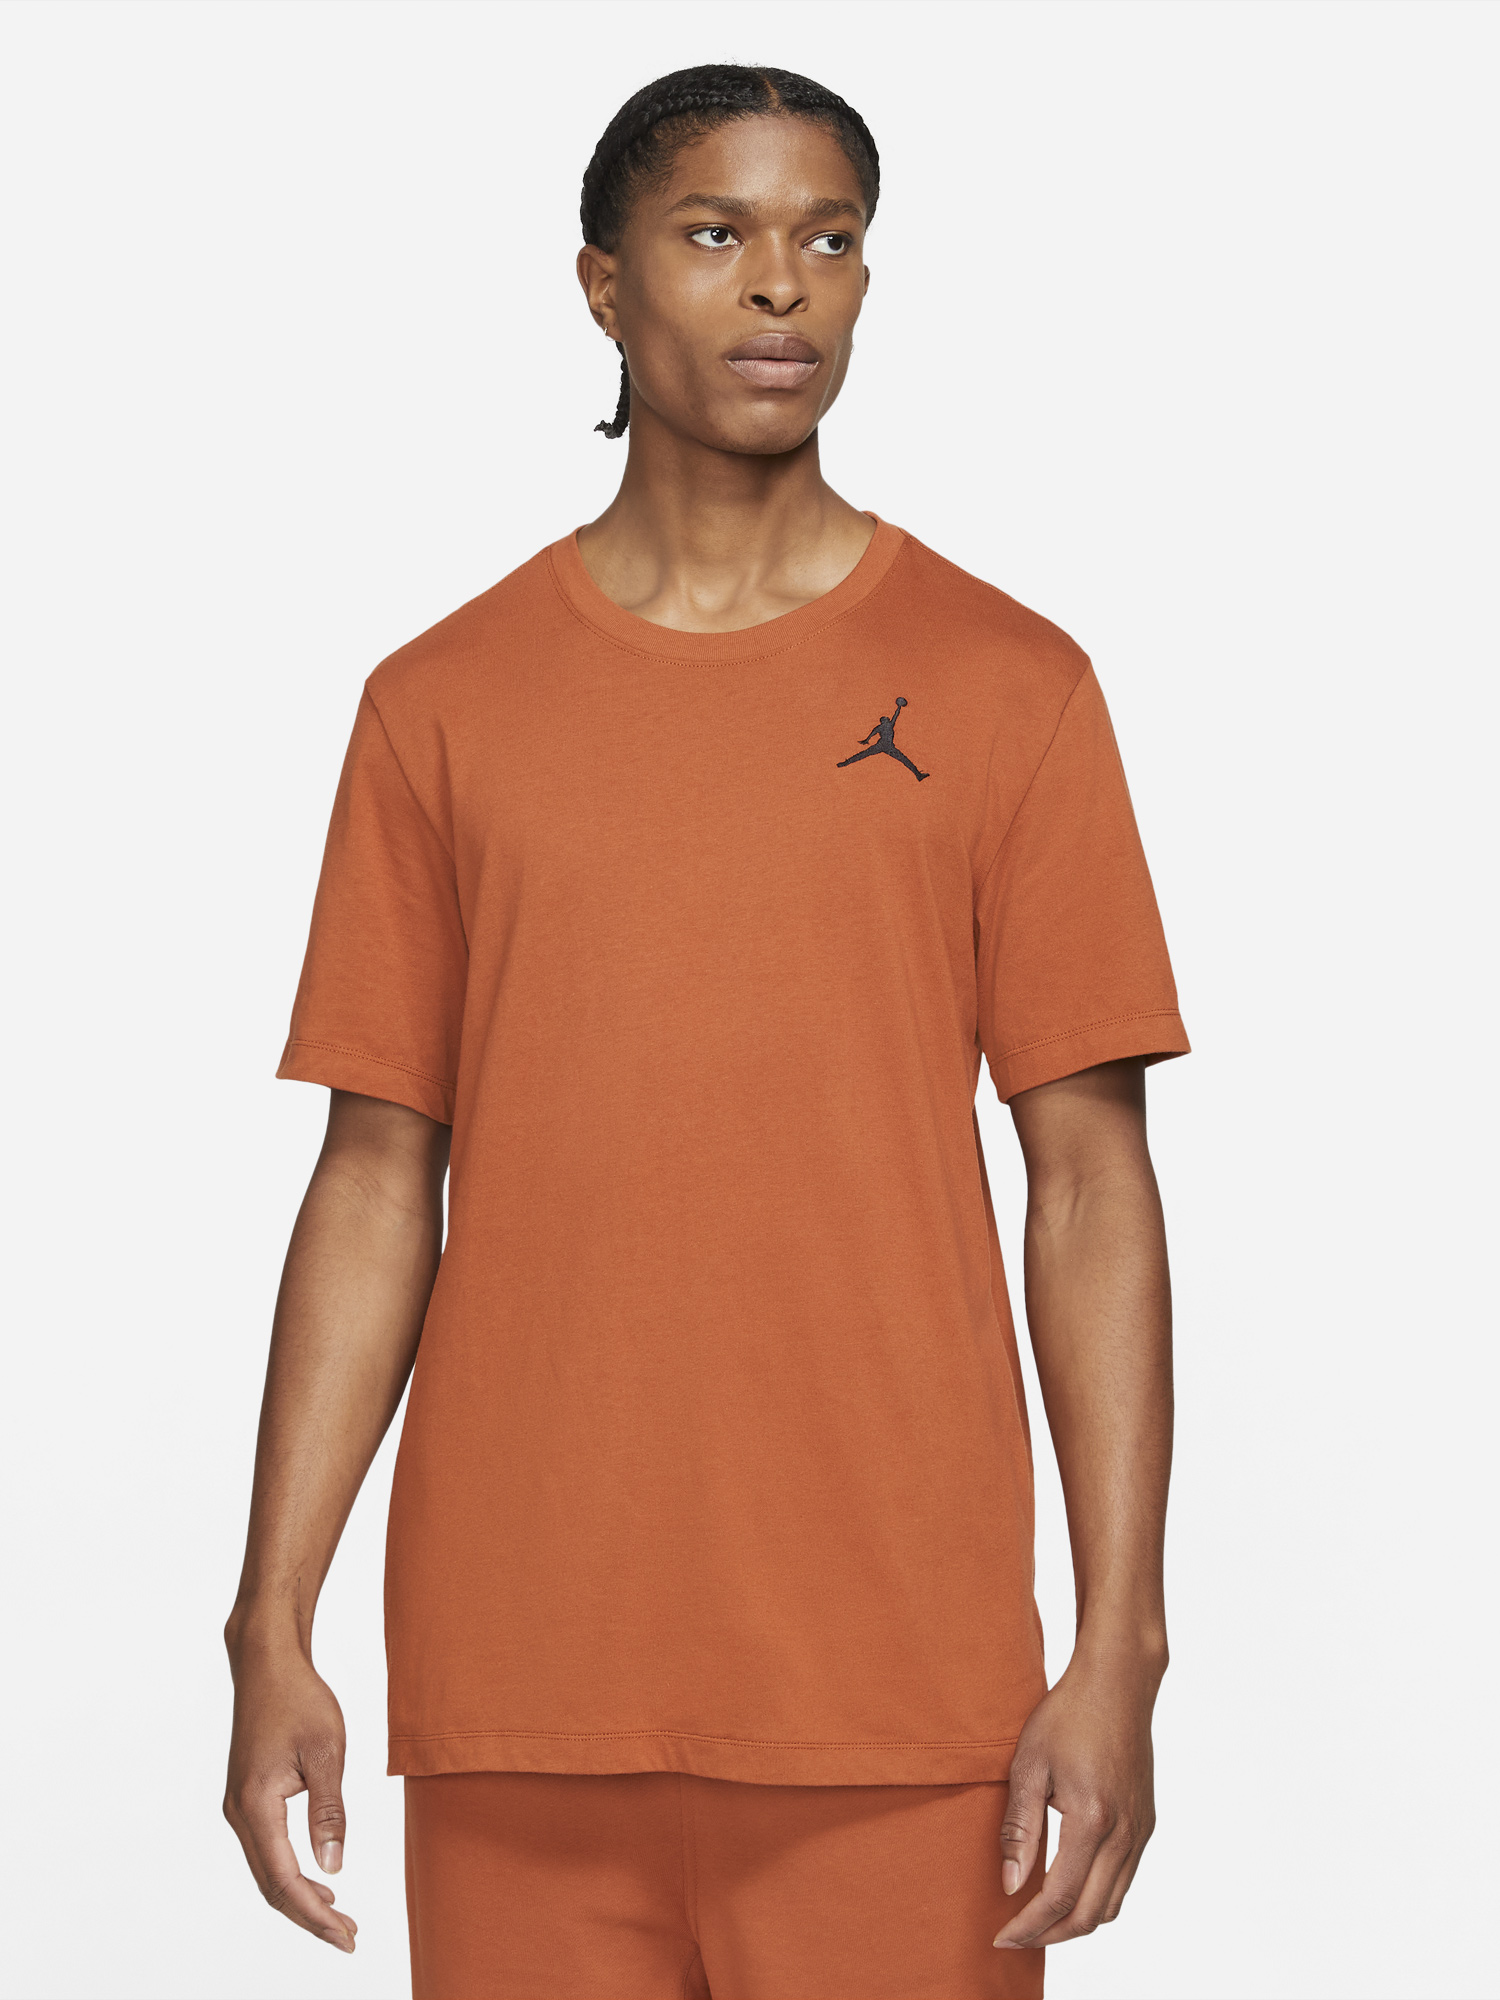 jordan-dark-russet-jumpman-embroidered-shirt-1